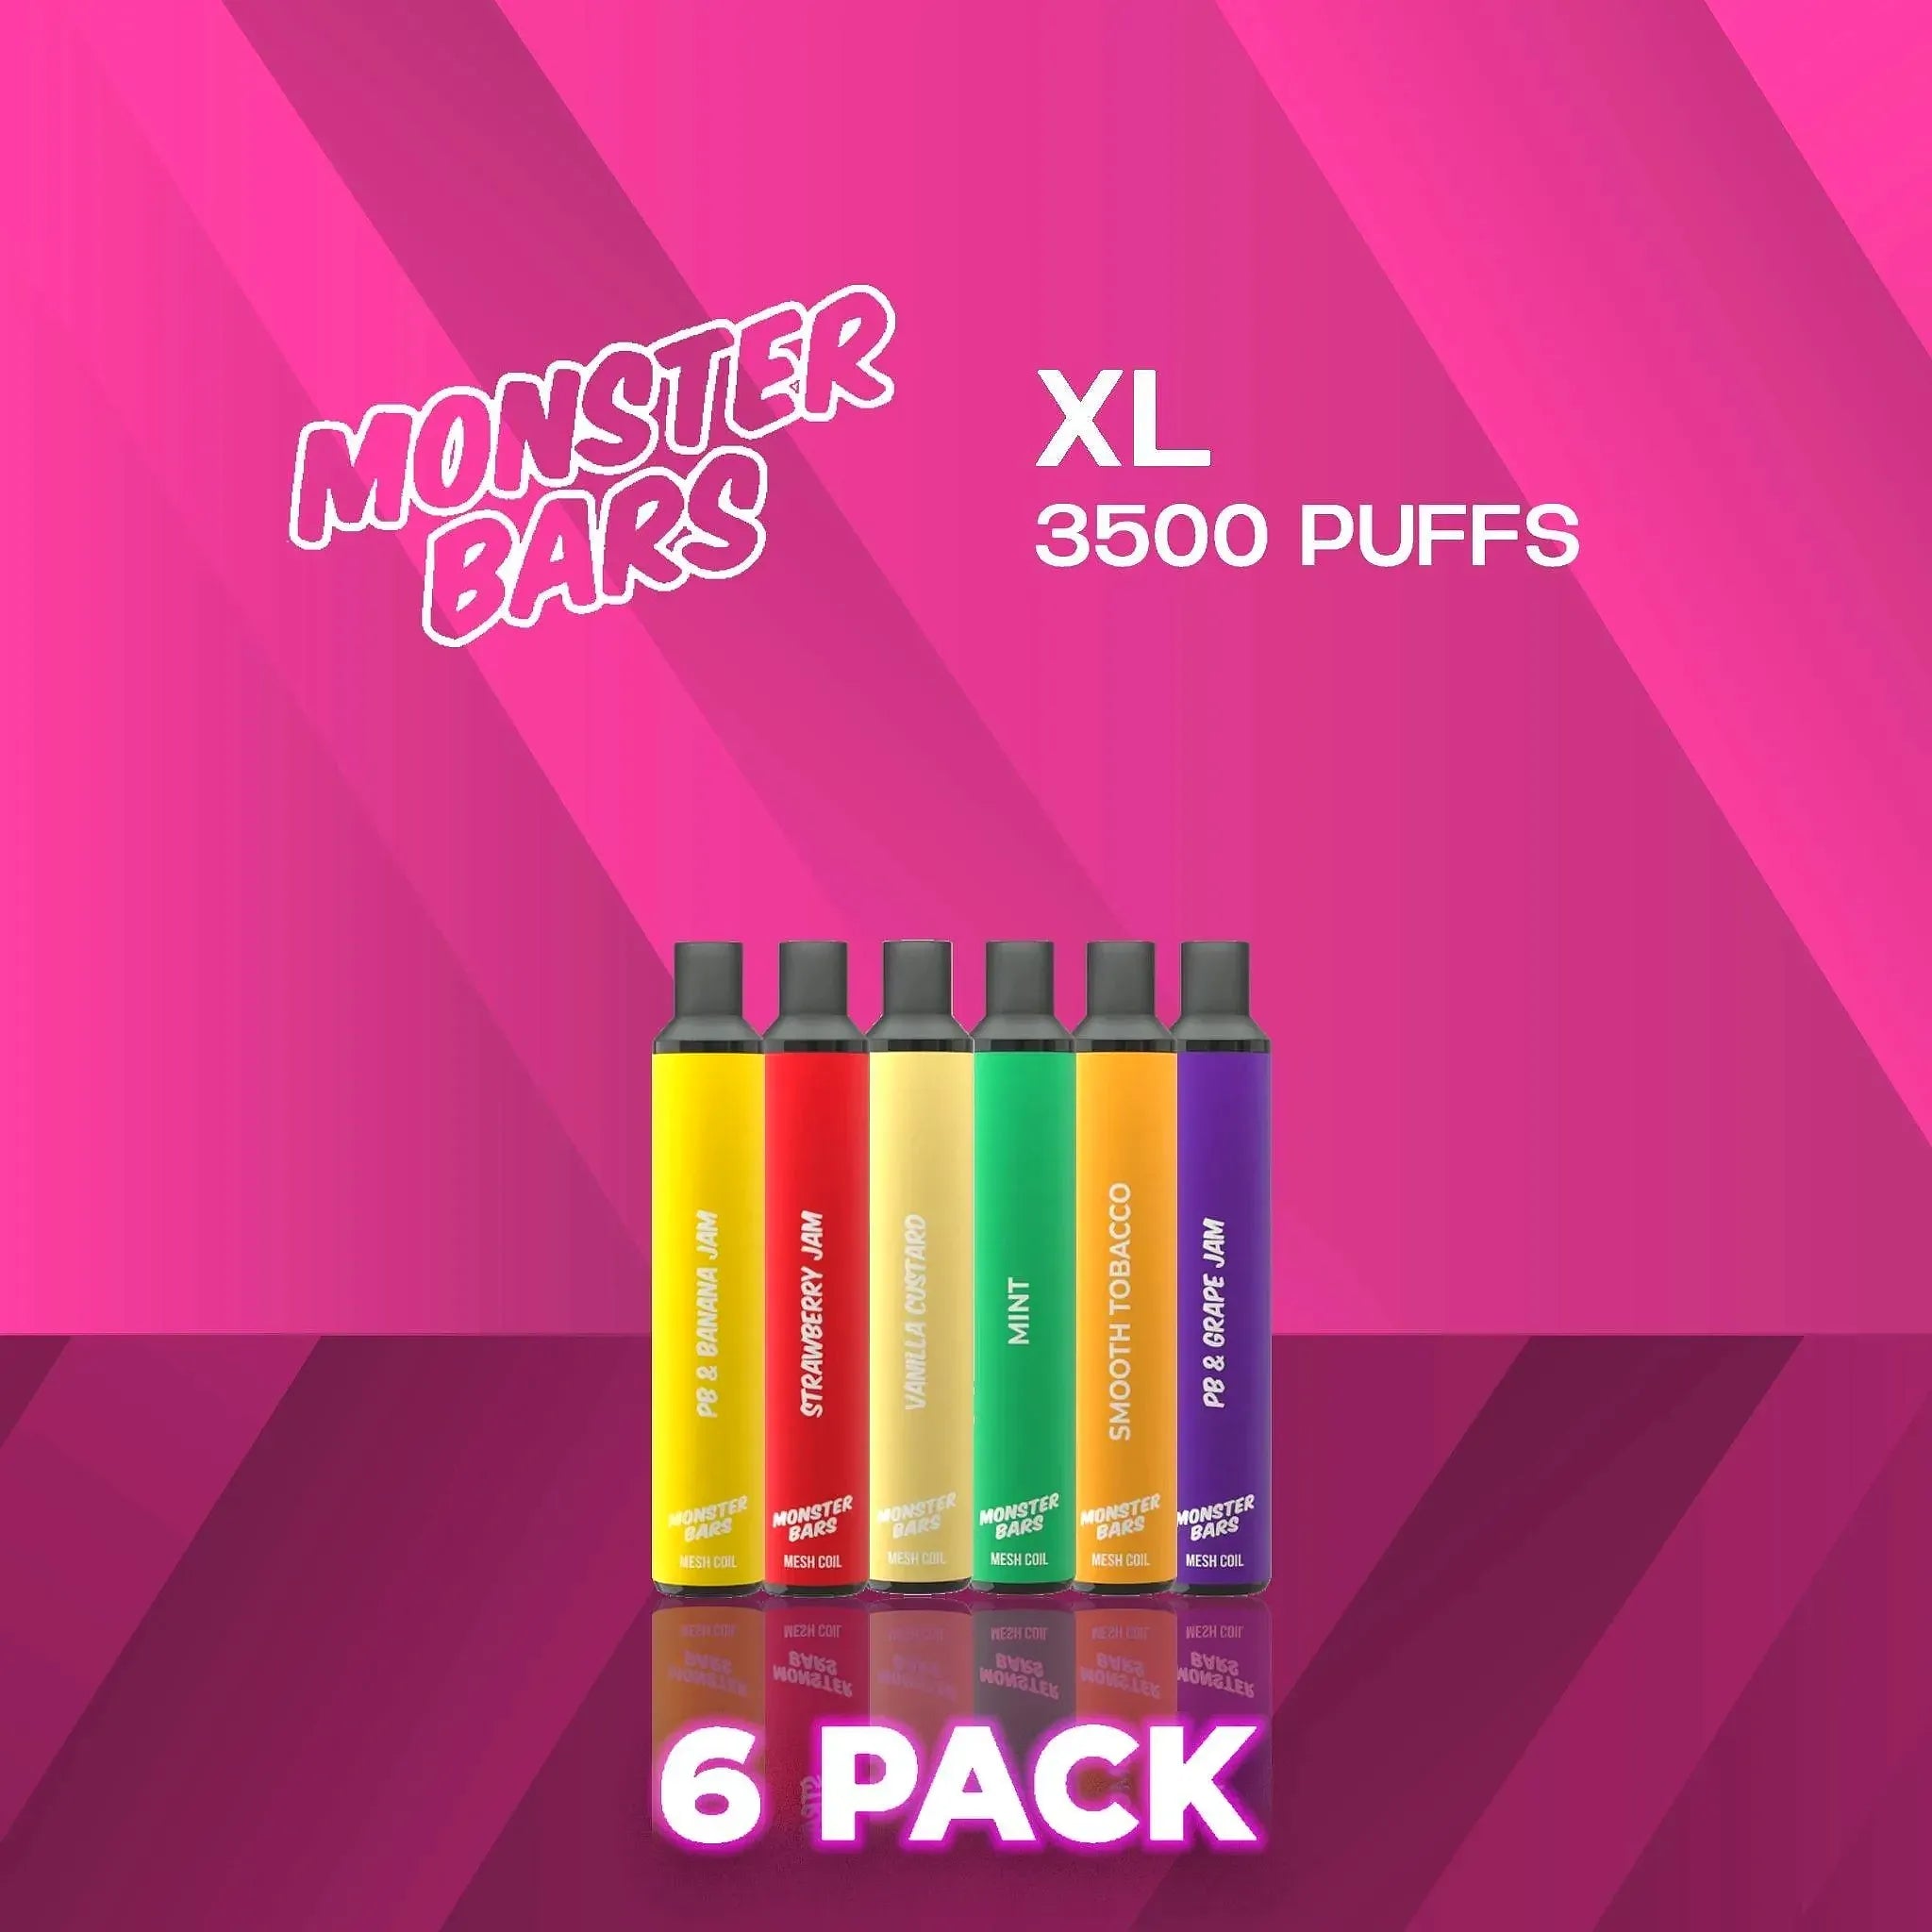 Monster Bar Disposable Vape 3500 Puffs - 6 Pack